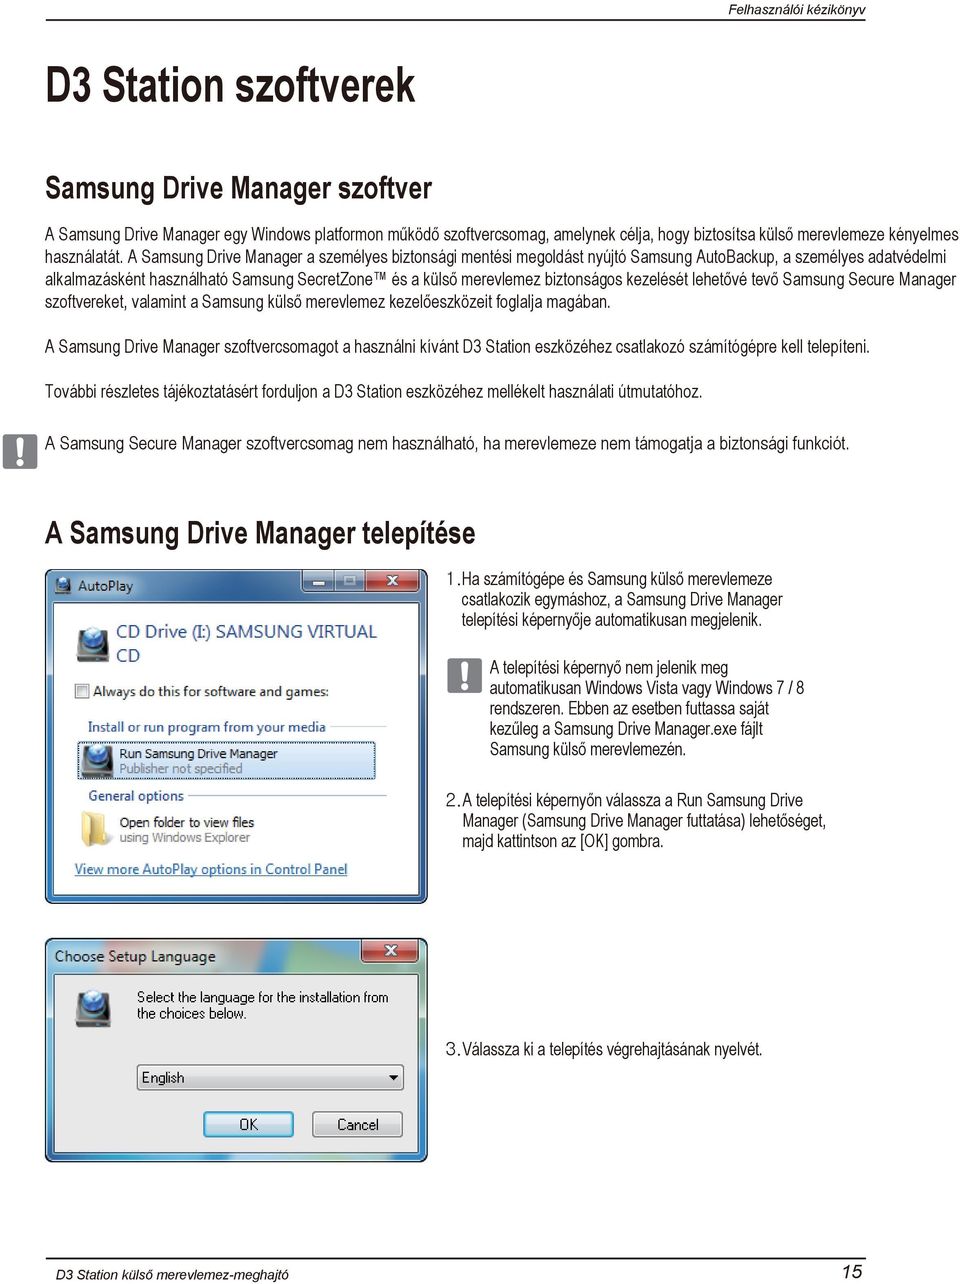 kezelését lehetővé tevő Samsung Secure Manager szoftvereket, valamint a Samsung külső merevlemez kezelőeszközeit foglalja magában.